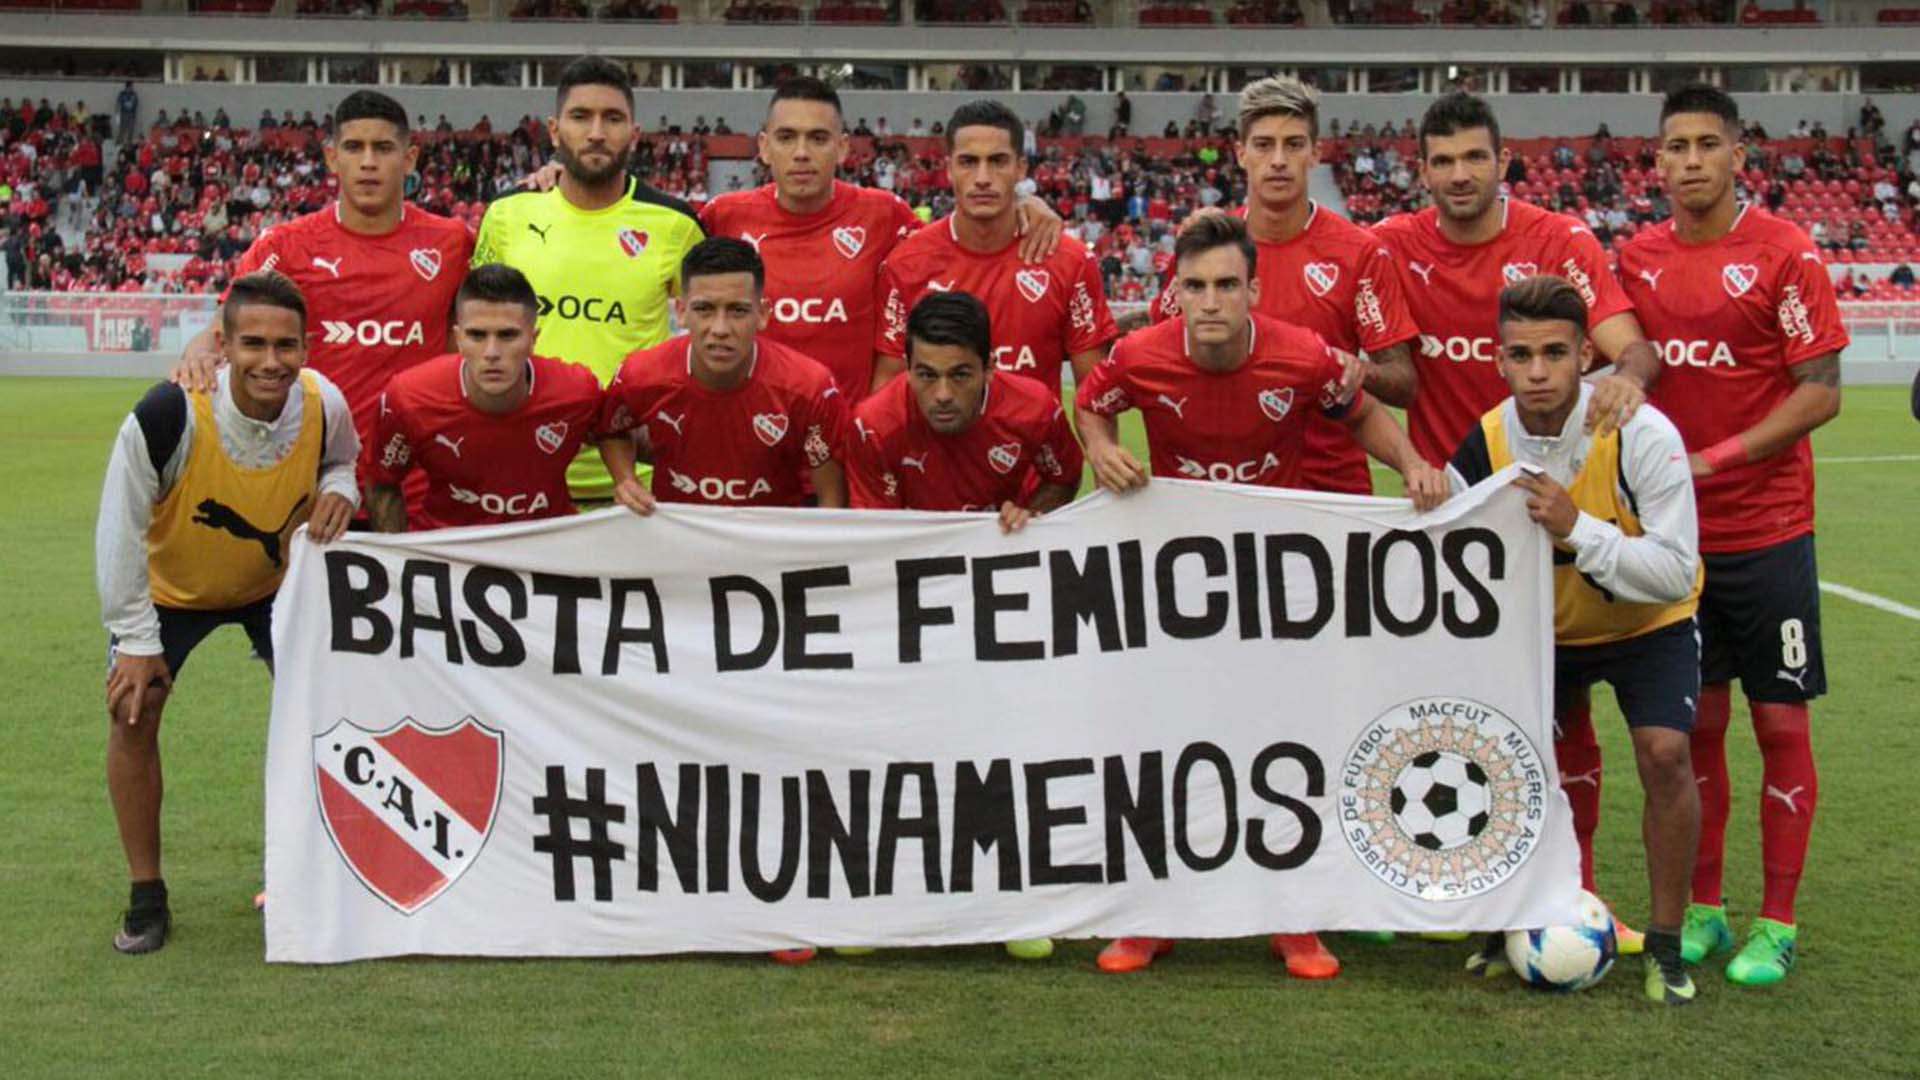 Independiente Rafaela Femicidios #NiUnaMenos Primera Division 15042017